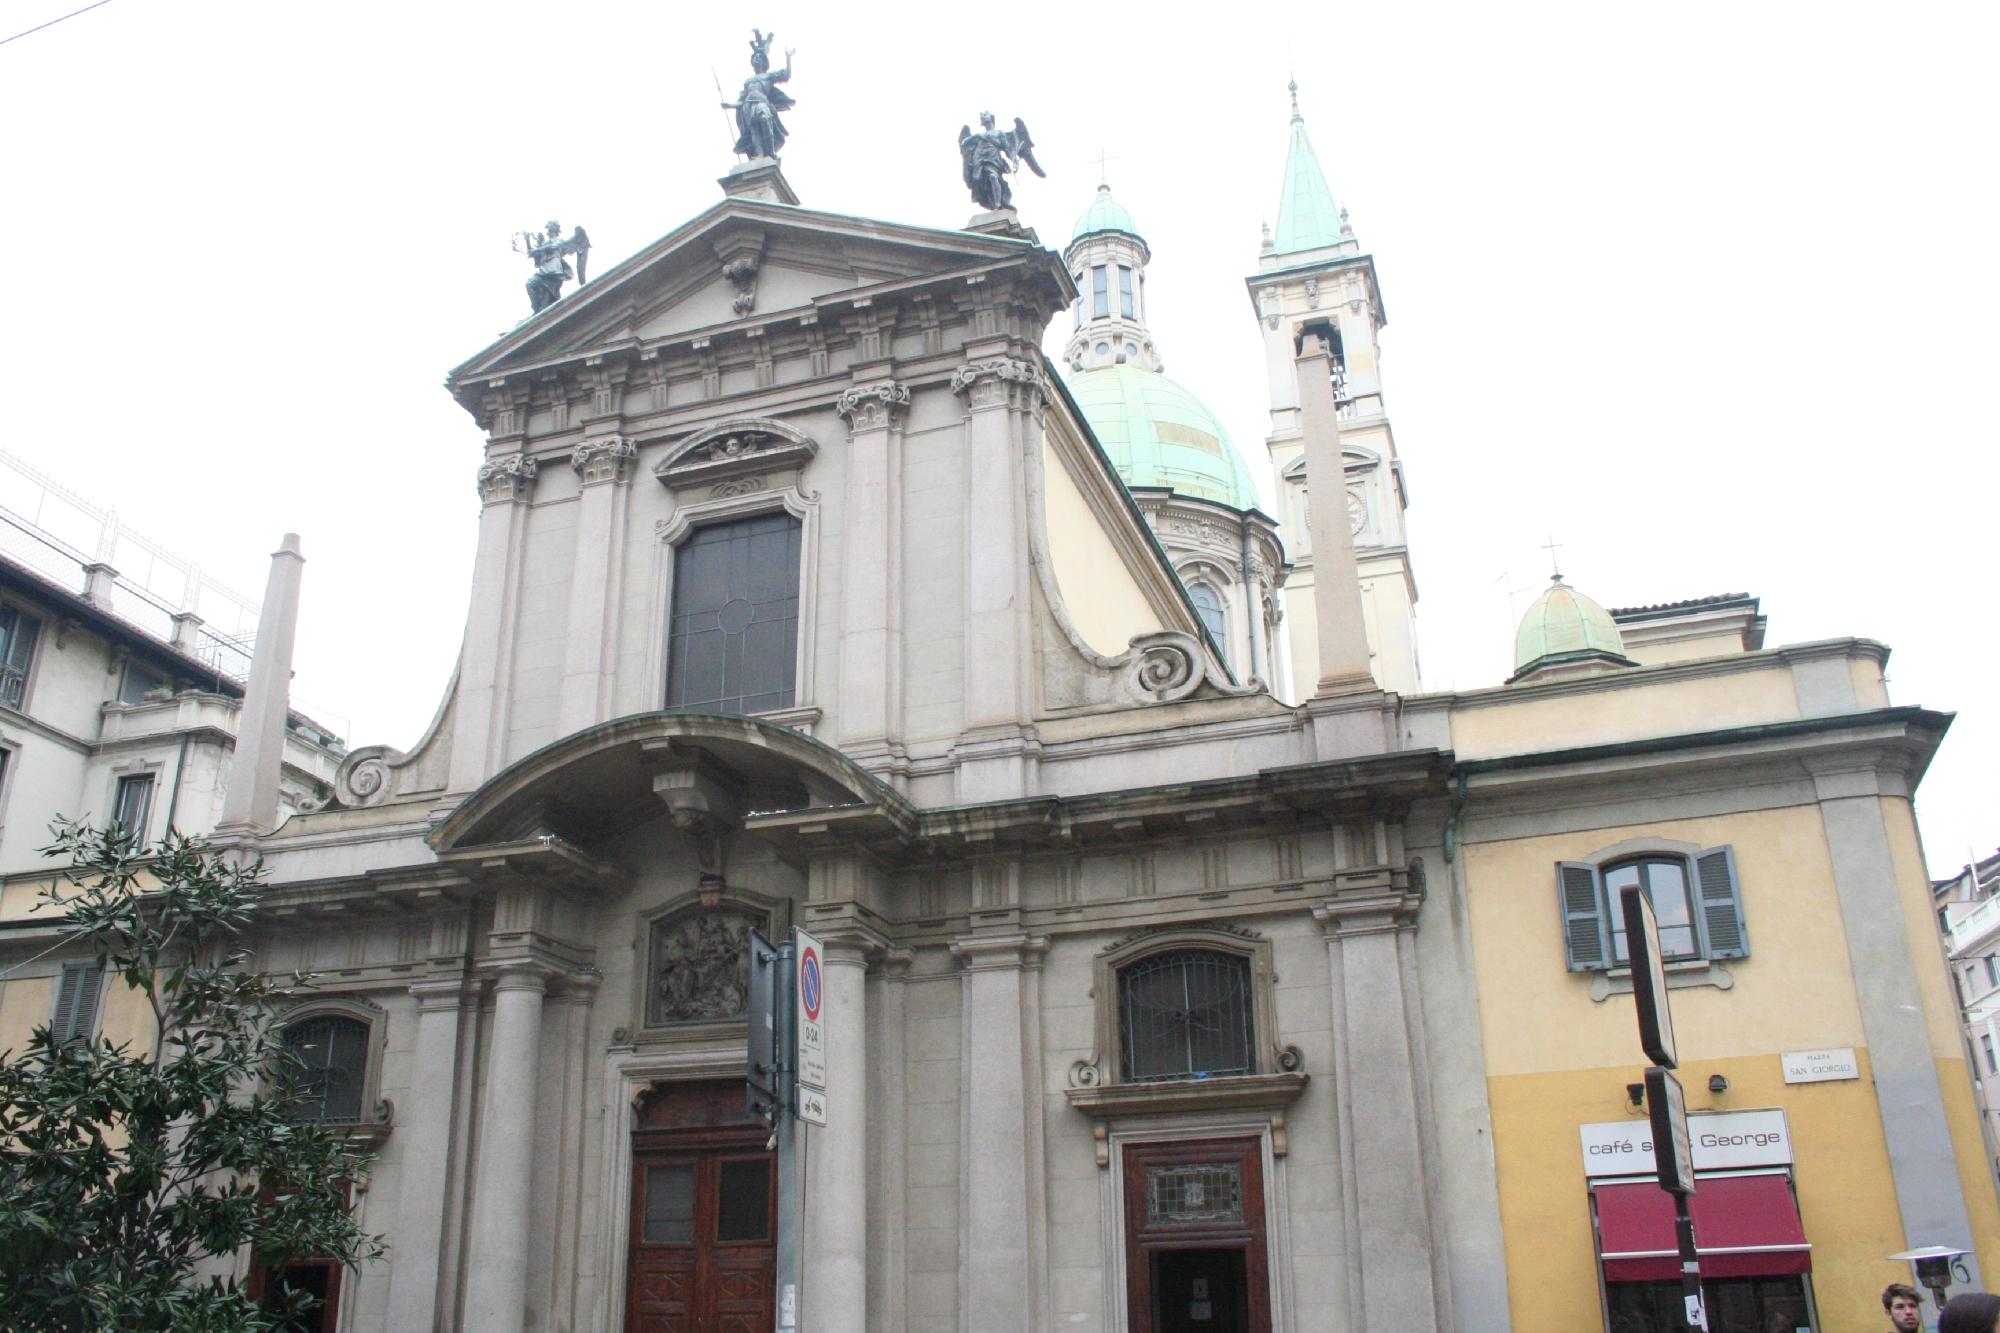 Chiesa di San Giorgio al Palazzo